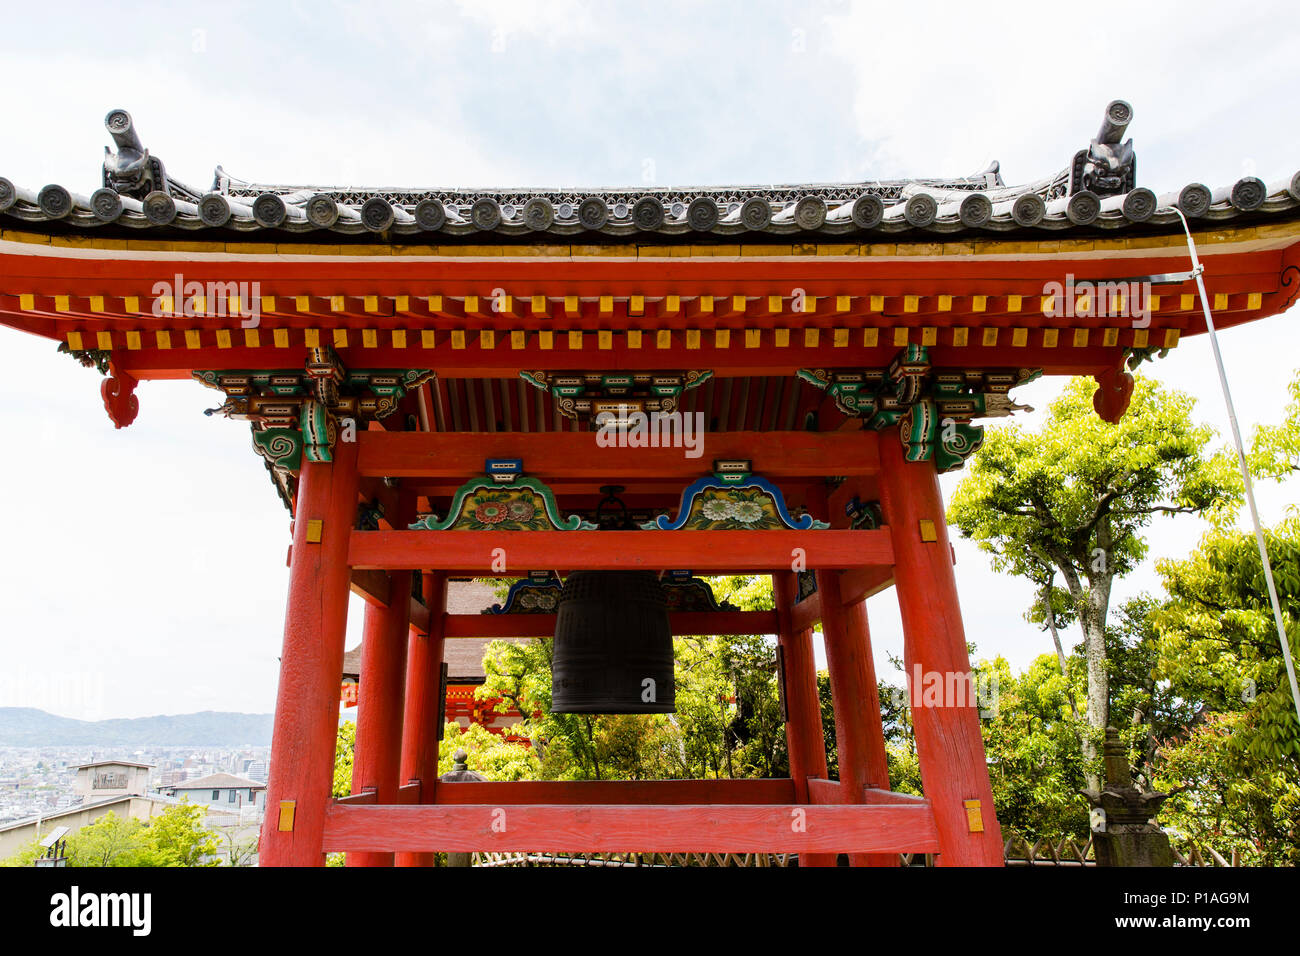 Der Glockenturm bekannt als shoro der Kiyomizu-dera Buddhistischen Tempel, Kyoto, Japan. Stockfoto